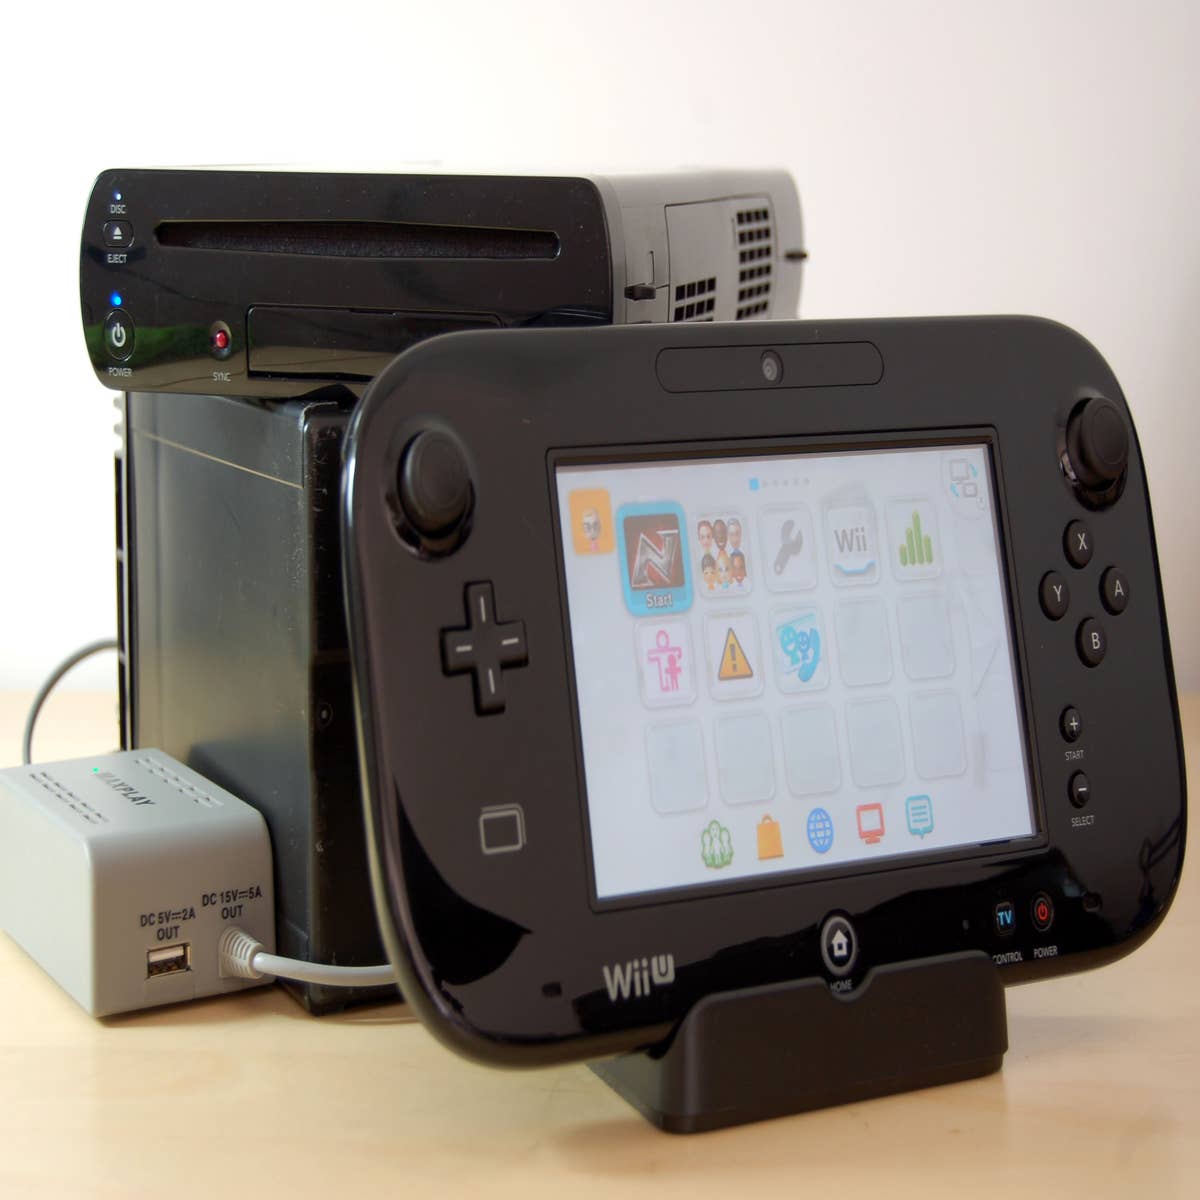 Electronic Arts se diz impressionada com inovação do Wii U